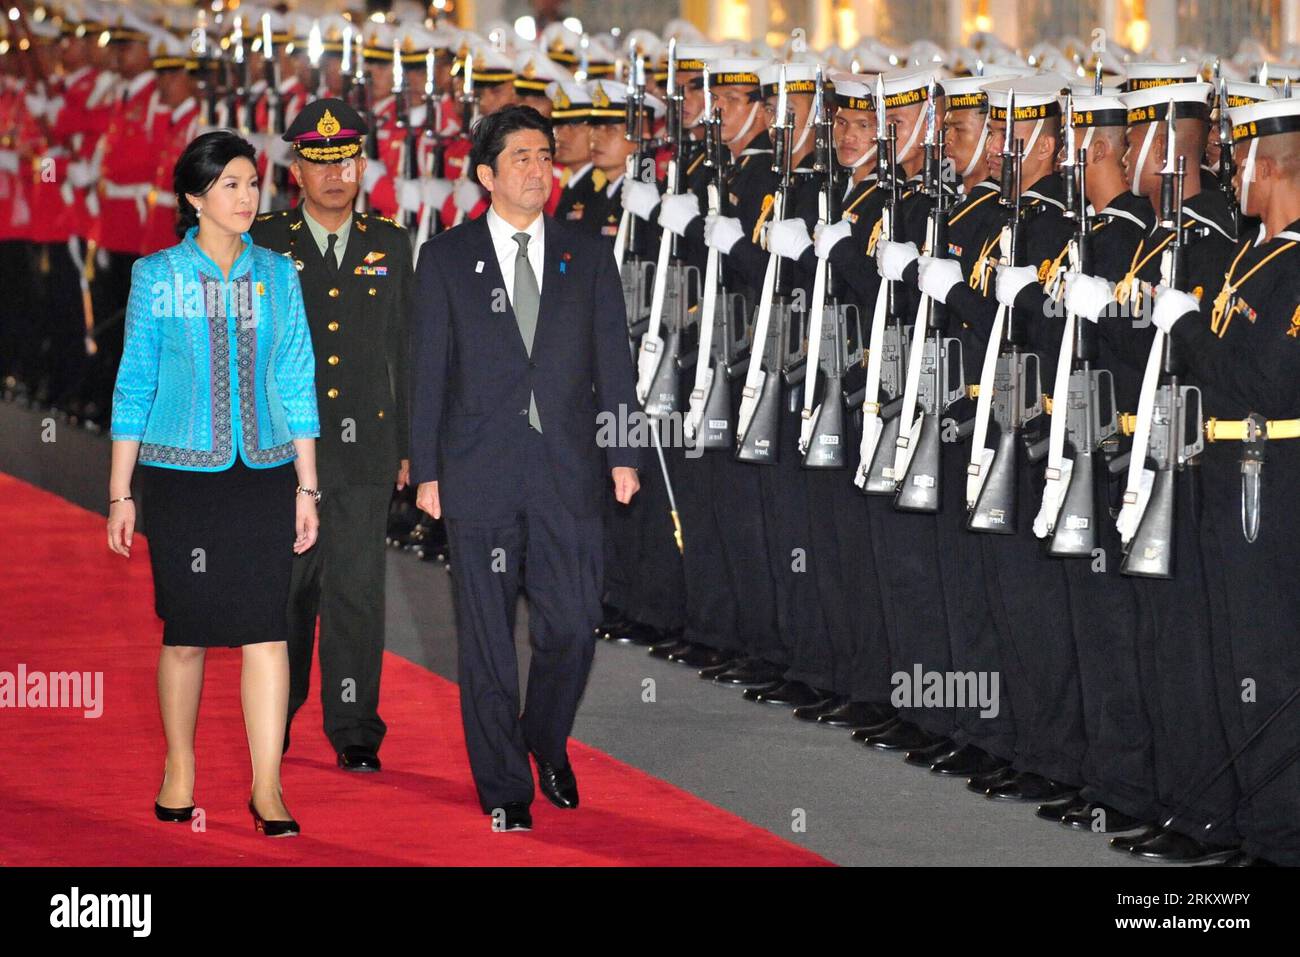 Bildnummer : 59099354 Datum : 17.01.2013 Copyright : imago/Xinhua (130117) -- BANGKOK, 17 janvier 2013 (Xinhua) -- le Premier ministre thaïlandais Yingluck Shinawatra (1e L) et le Premier ministre japonais Shinzo Abe (C) inspectent les gardes d'honneur lors d'une cérémonie de bienvenue tenue à la Maison du gouvernement à Bangkok, capitale de la Thaïlande, le 17 janvier 2013. Shinzo Abe est arrivé jeudi à Bangkok pour une visite officielle de deux jours en Thaïlande. (Xinhua/Rachen Sageamsak) THAILAND-BANGKOK-JAPAN-VISIT PUBLICATIONxNOTxINxCHN People Politik x0x xrj 2013 quer 59099354 Date 17 01 2013 Copyright Imago XINHUA Bangkok Jan 17 Banque D'Images